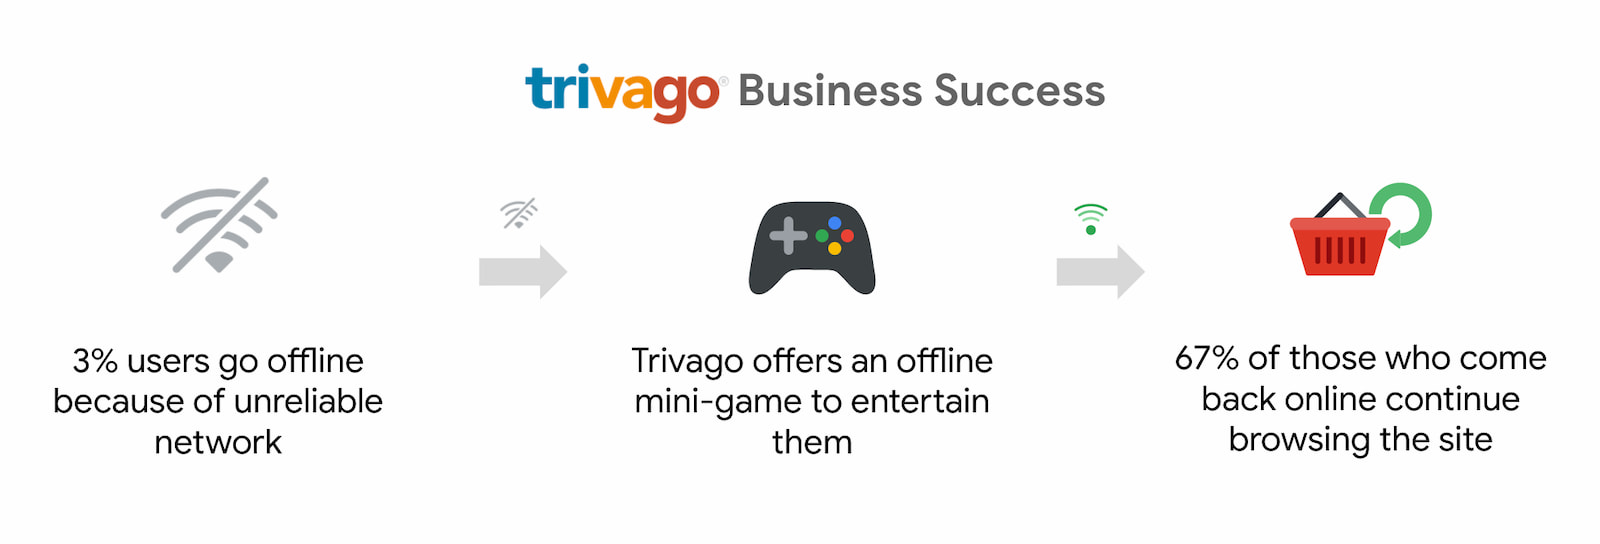 Trivago, tekrar çevrimiçi olup göz atmaya devam eden kullanıcı sayısında% 67&#39;lik bir artış gözlemledi.